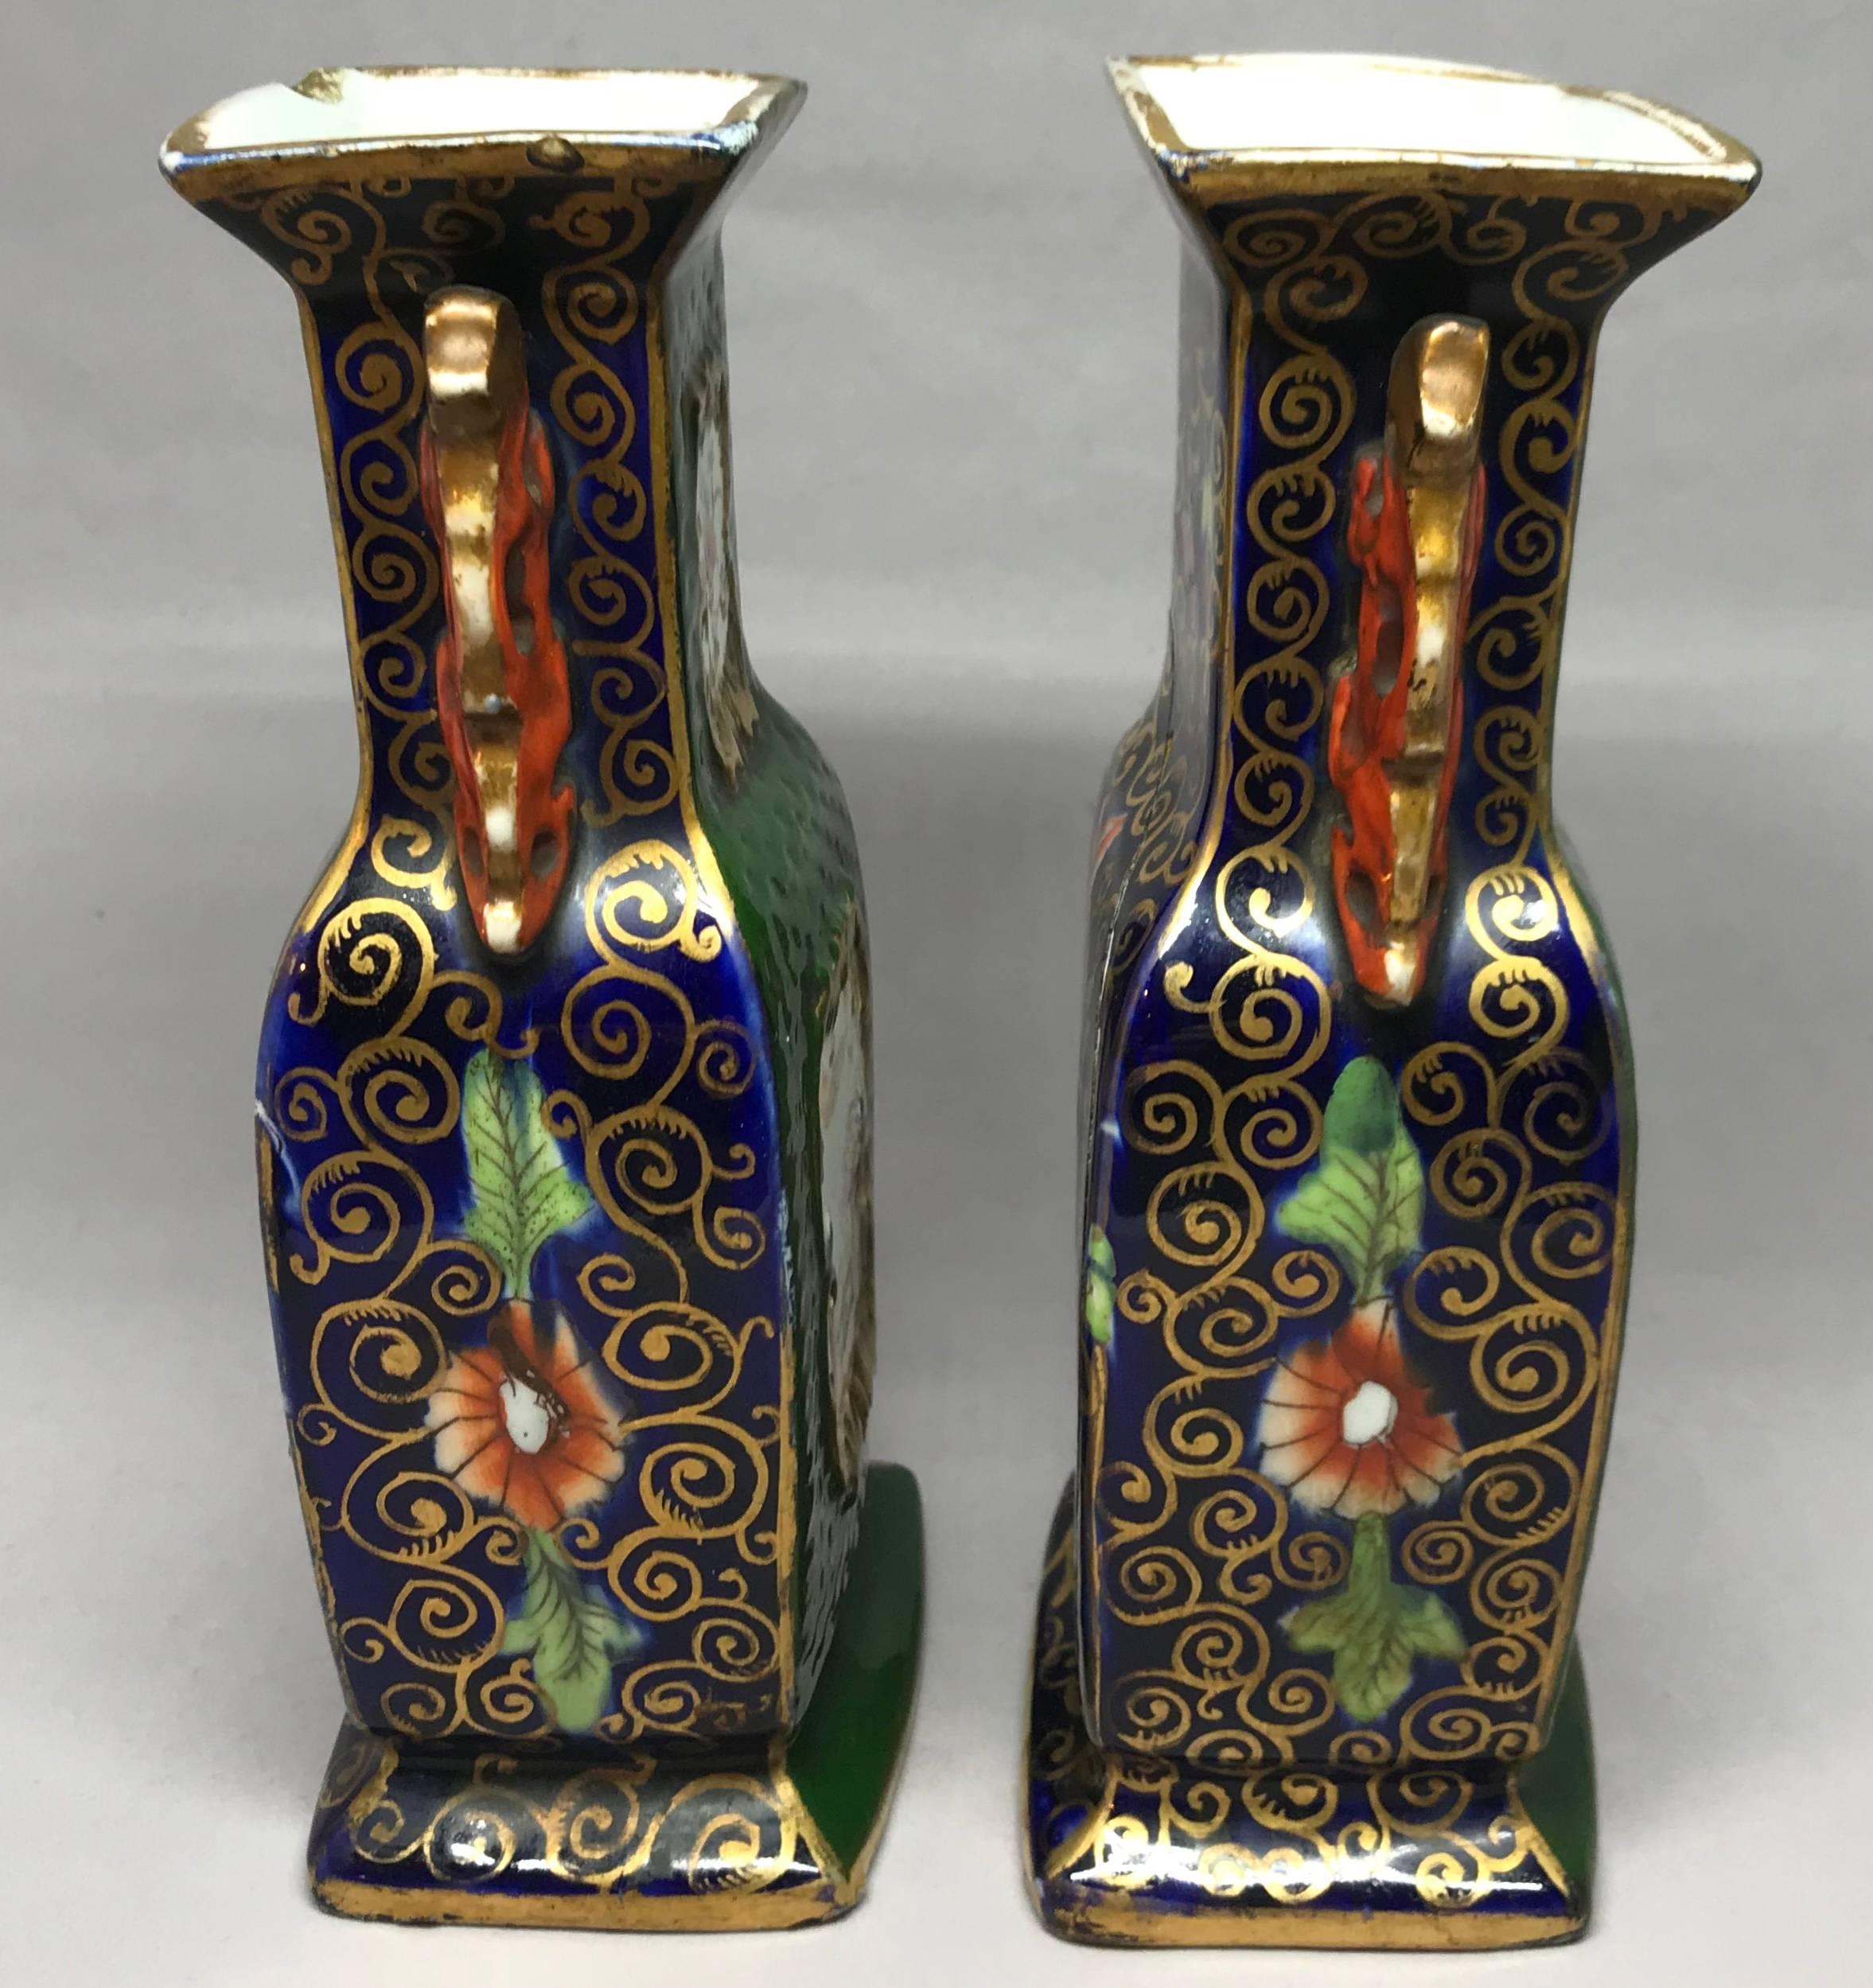 Ein Paar grüner englischer Vasen im chinesischen Stil. Vasen in sattem Grün und Koralle mit Chinoiserie-Szenen und floralem Muster auf Kobalt- und Goldgrund auf der Rückseite, England, um 1815
Abmessungen: 7.5